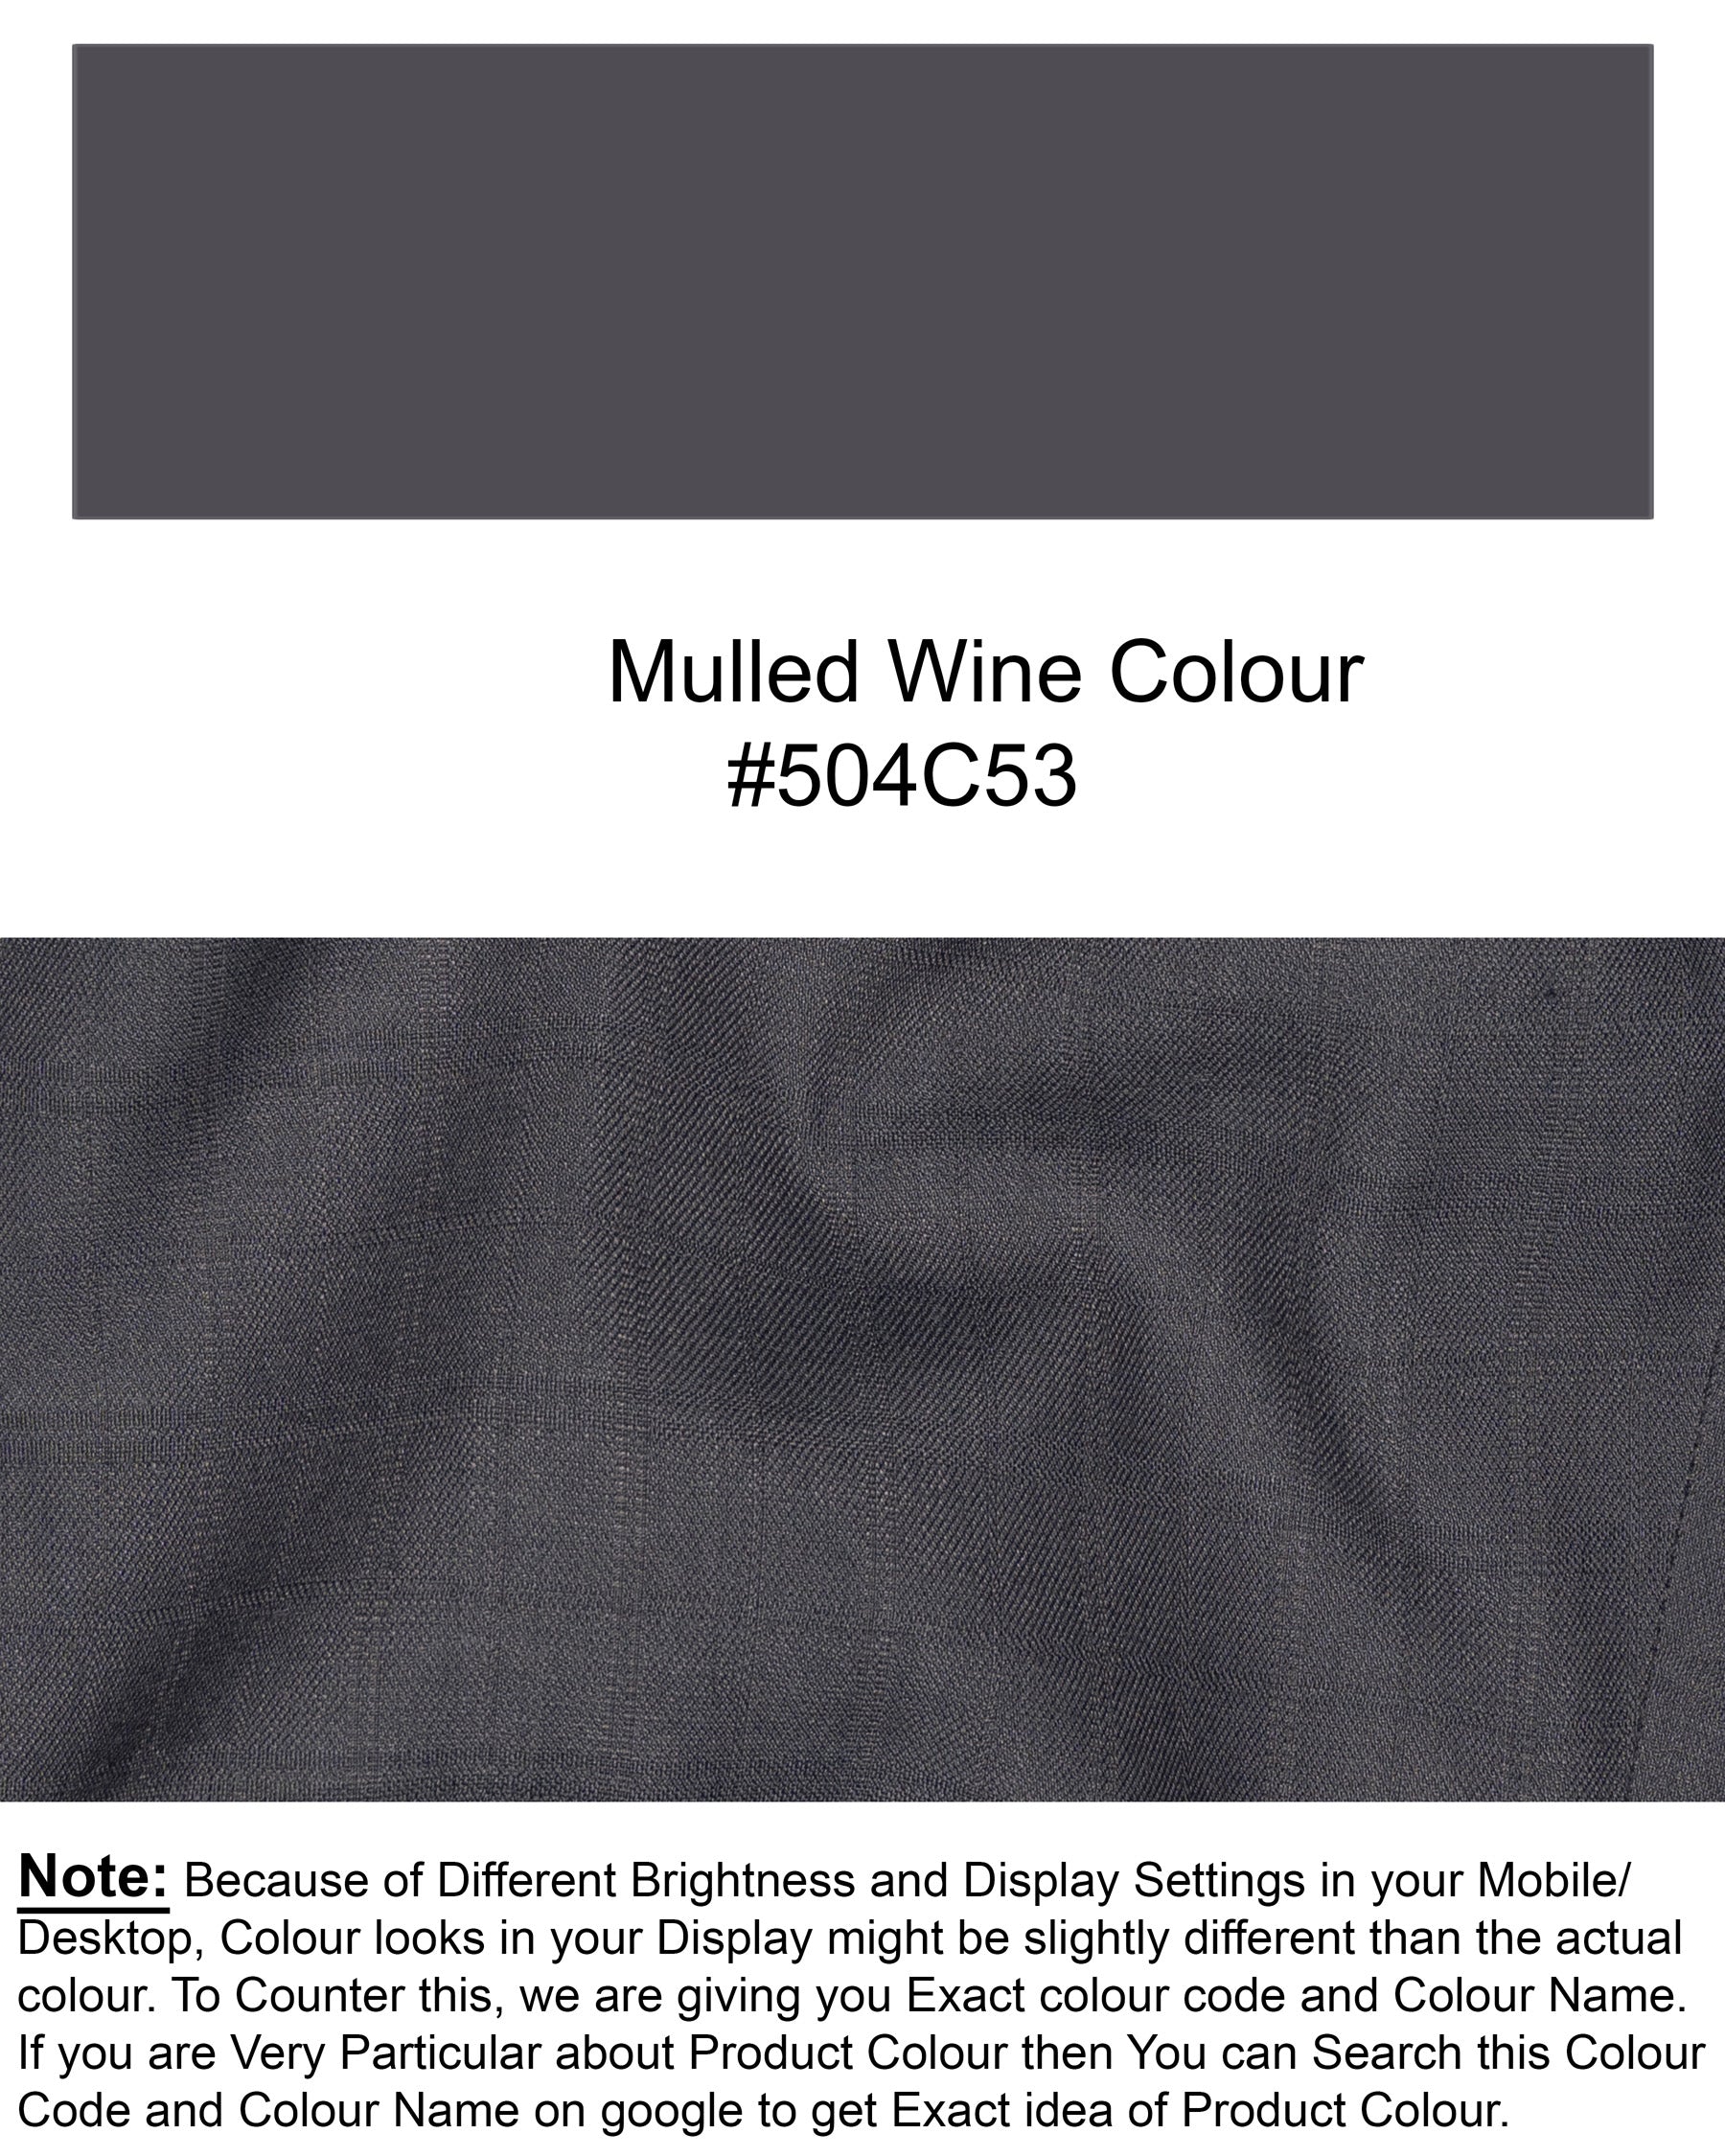 Mulled grey subtle Plaid Wool Rich Waistcoat V1479-36, V1479-38, V1479-40, V1479-42, V1479-44, V1479-46, V1479-48, V1479-50, V1479-52, V1479-54, V1479-56, V1479-58, V1479-60